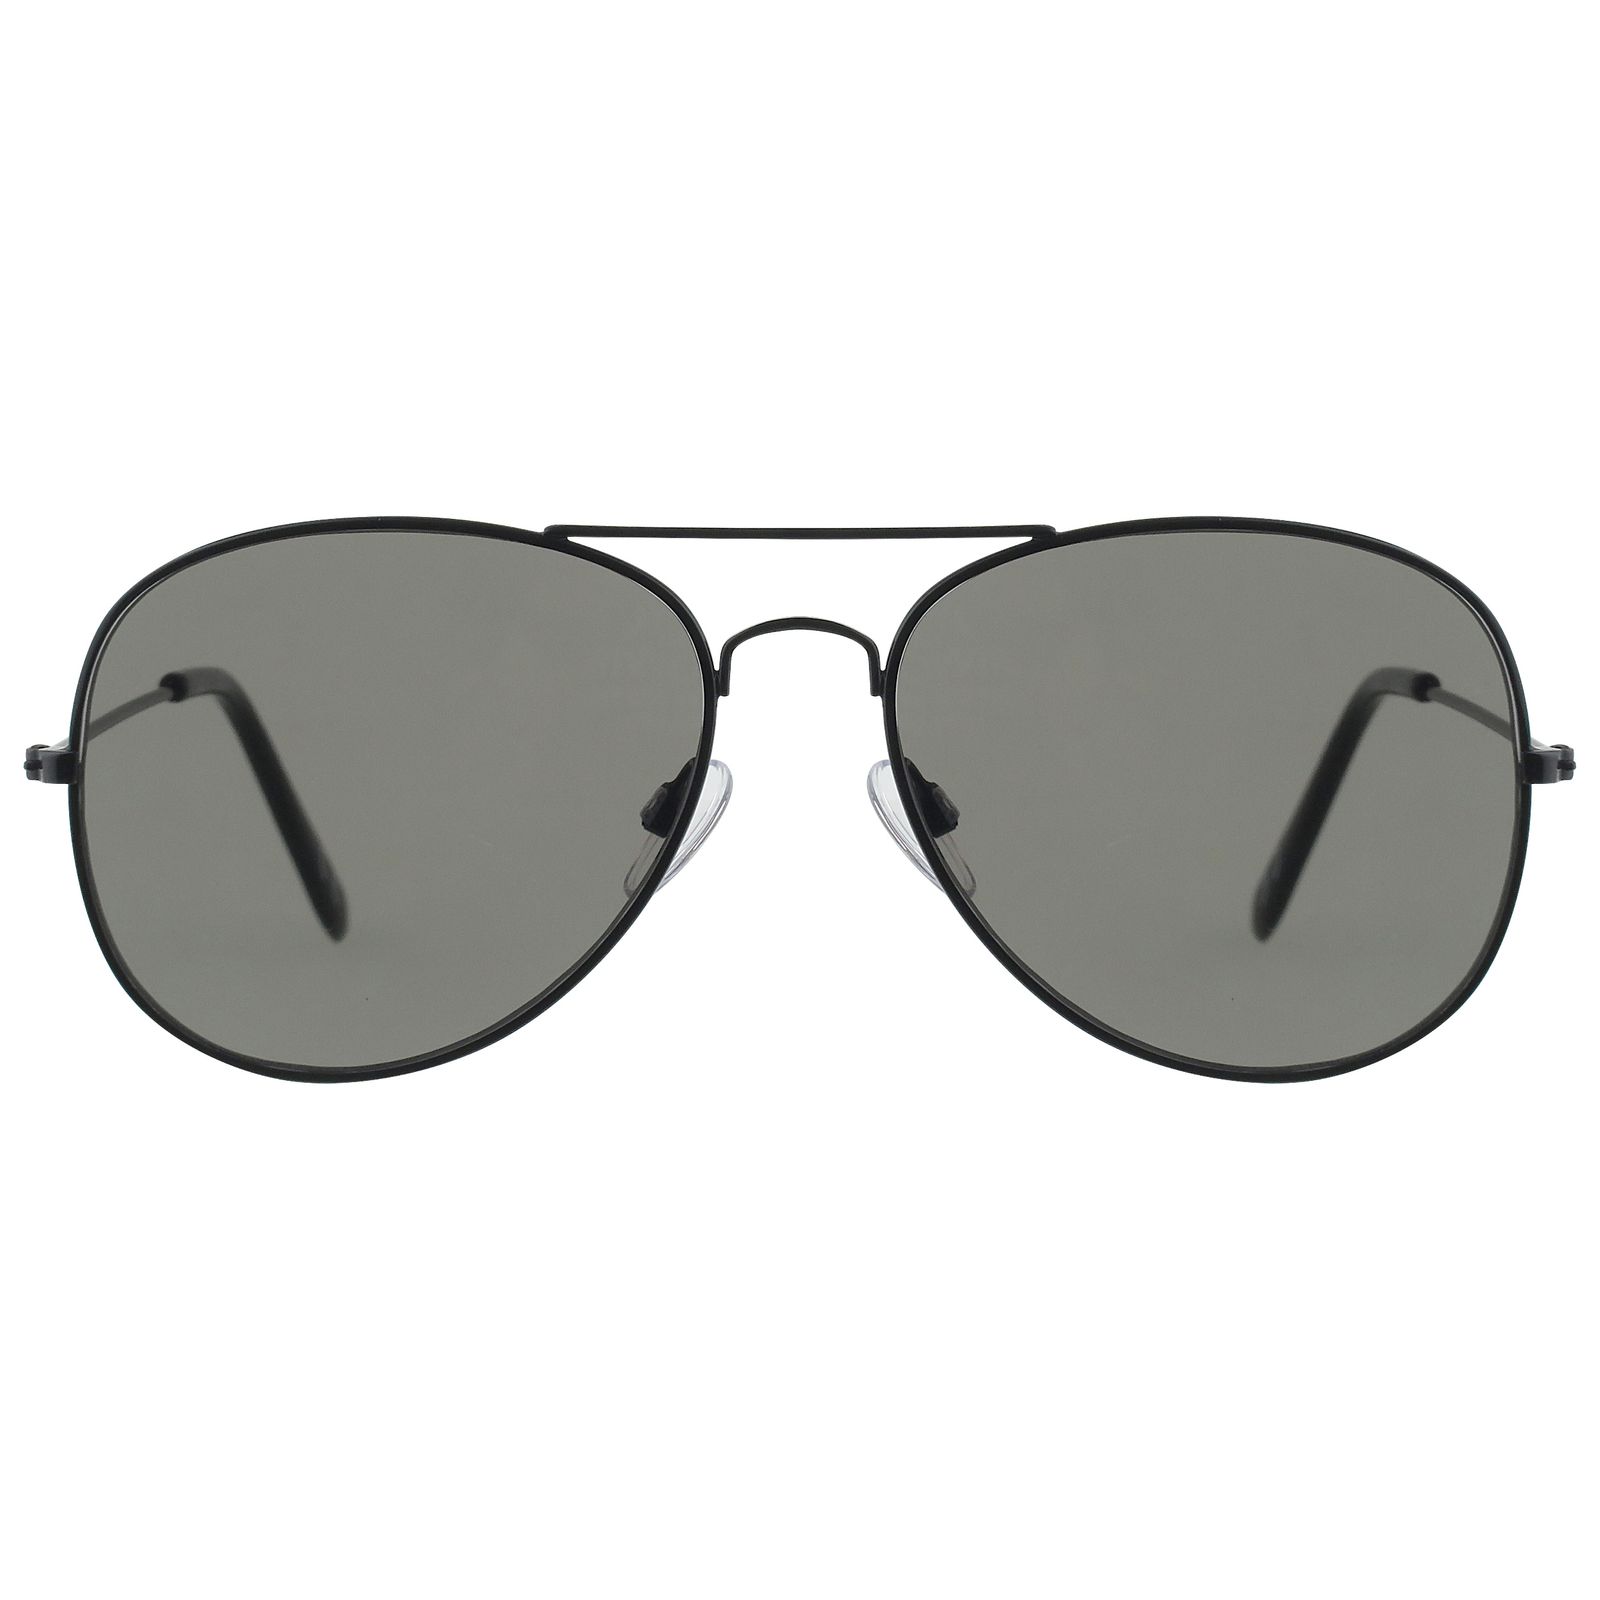 عینک آفتابی مدل 001 -  - 1